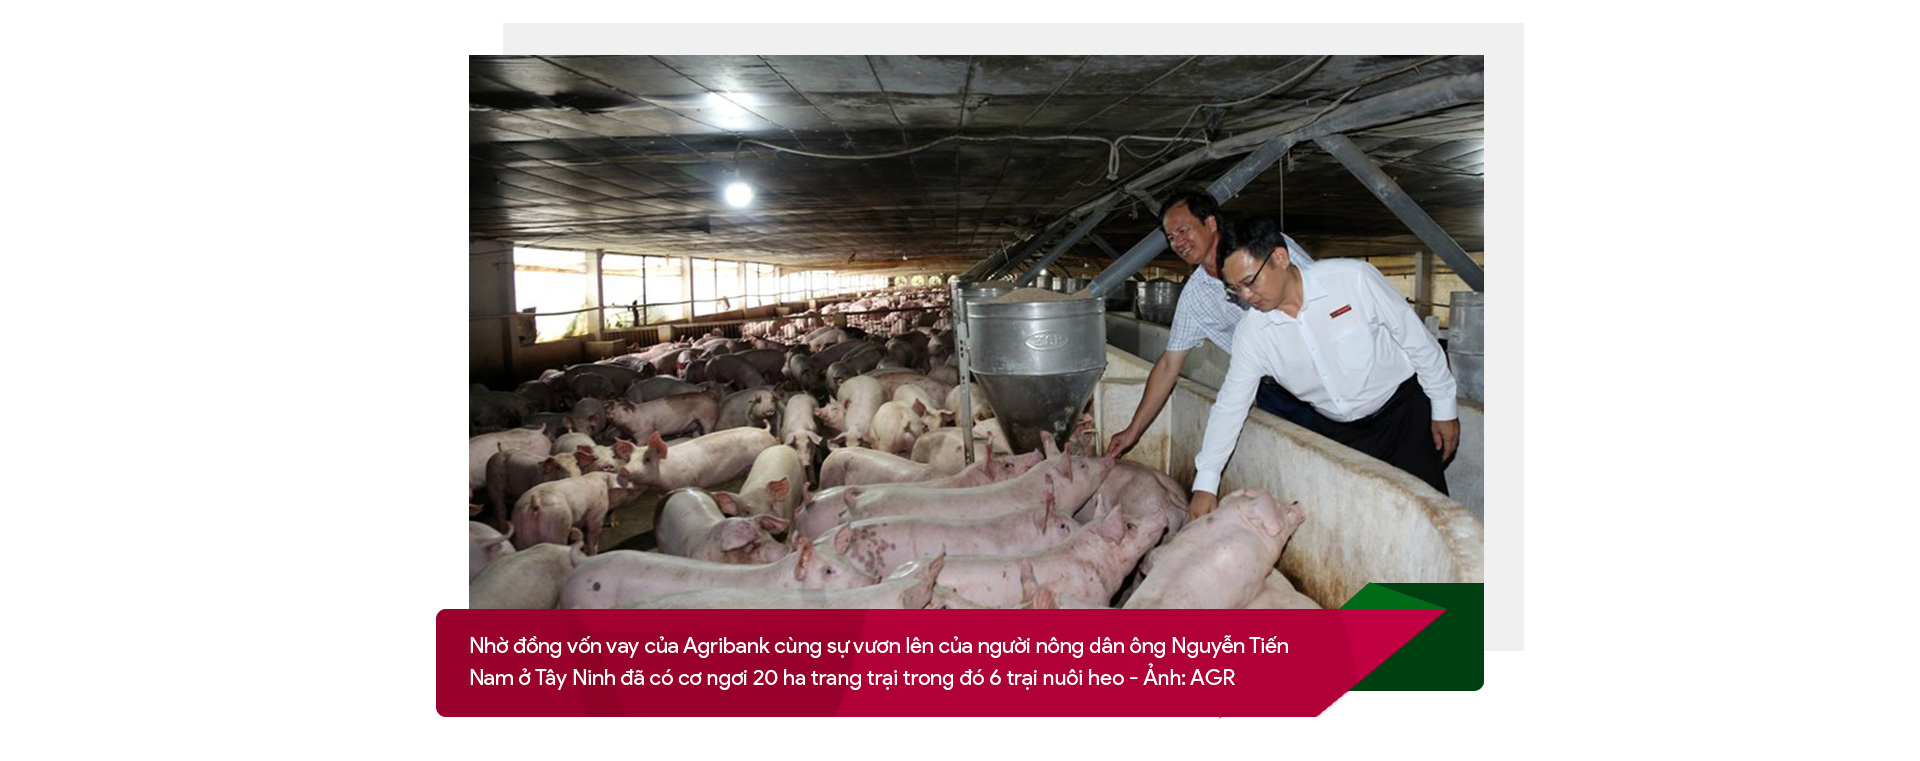 Agribank - điểm tựa vững chắc cho nền nông nghiệp Việt Nam - Ảnh 2.